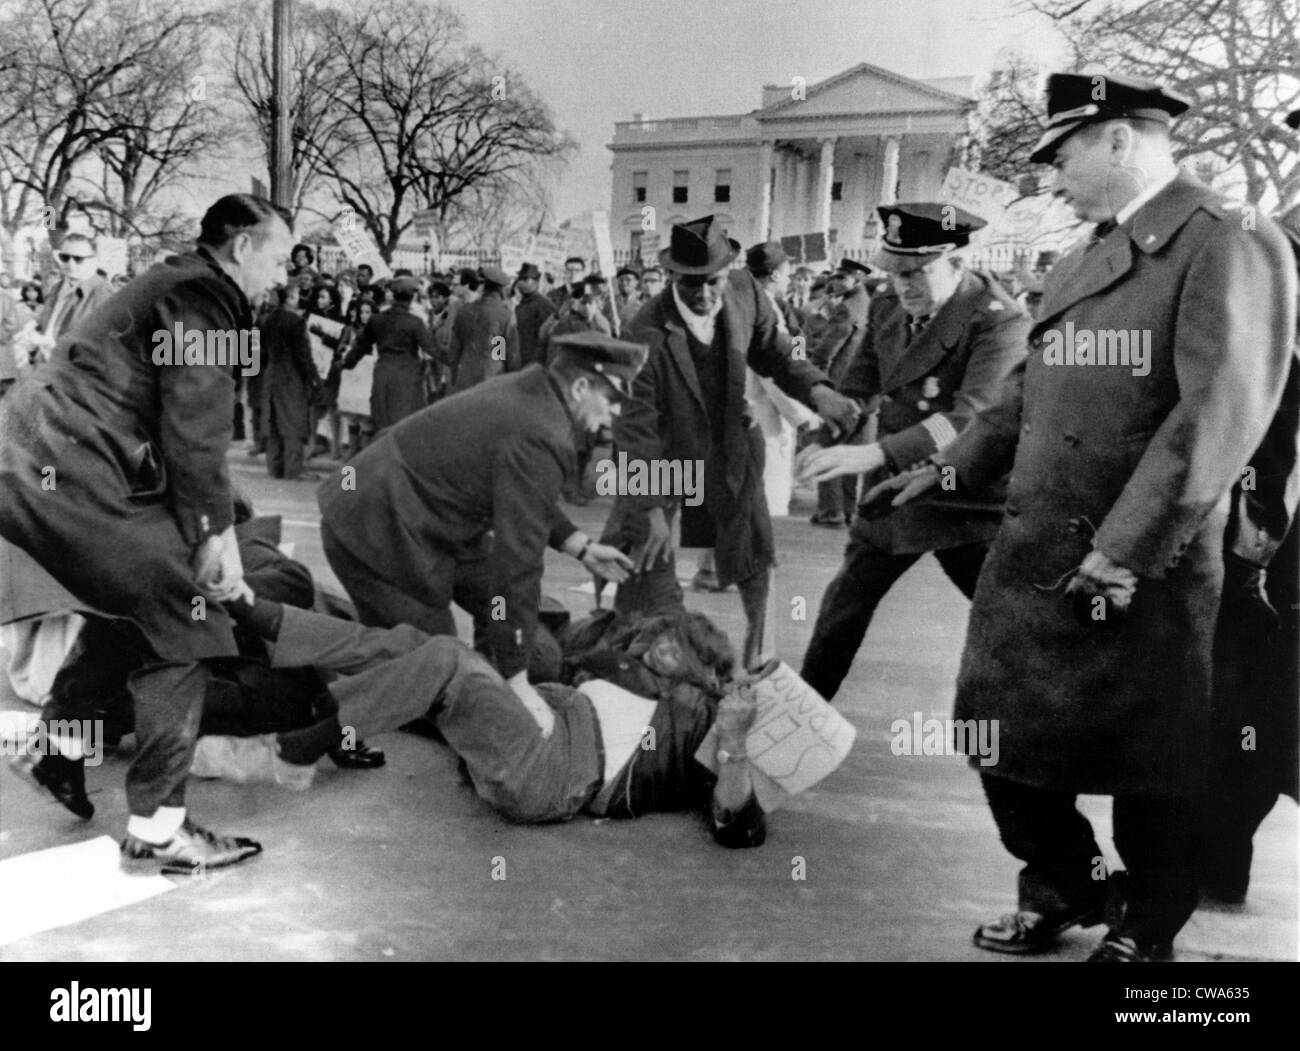 Bürgerliche Rechte Demonstranten in Washington D.C.block Verkehr vor dem weißen Haus, 12.03.65. Höflichkeit: CSU Archive / Stockfoto